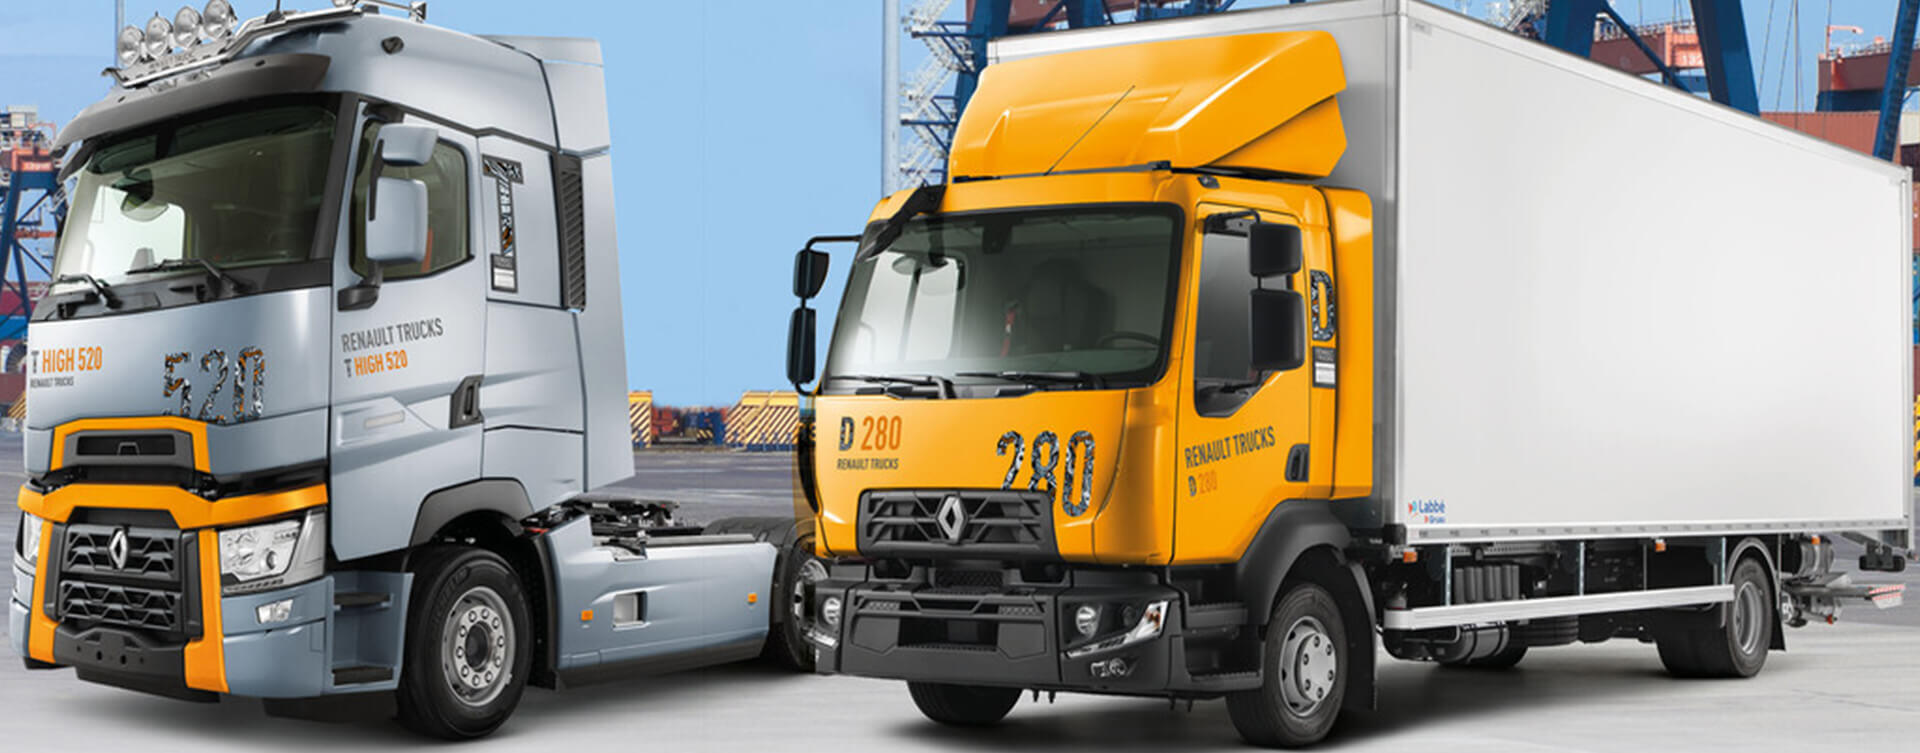 3 jaar garantie nu standaard op alle Renault Trucks T en D modellen